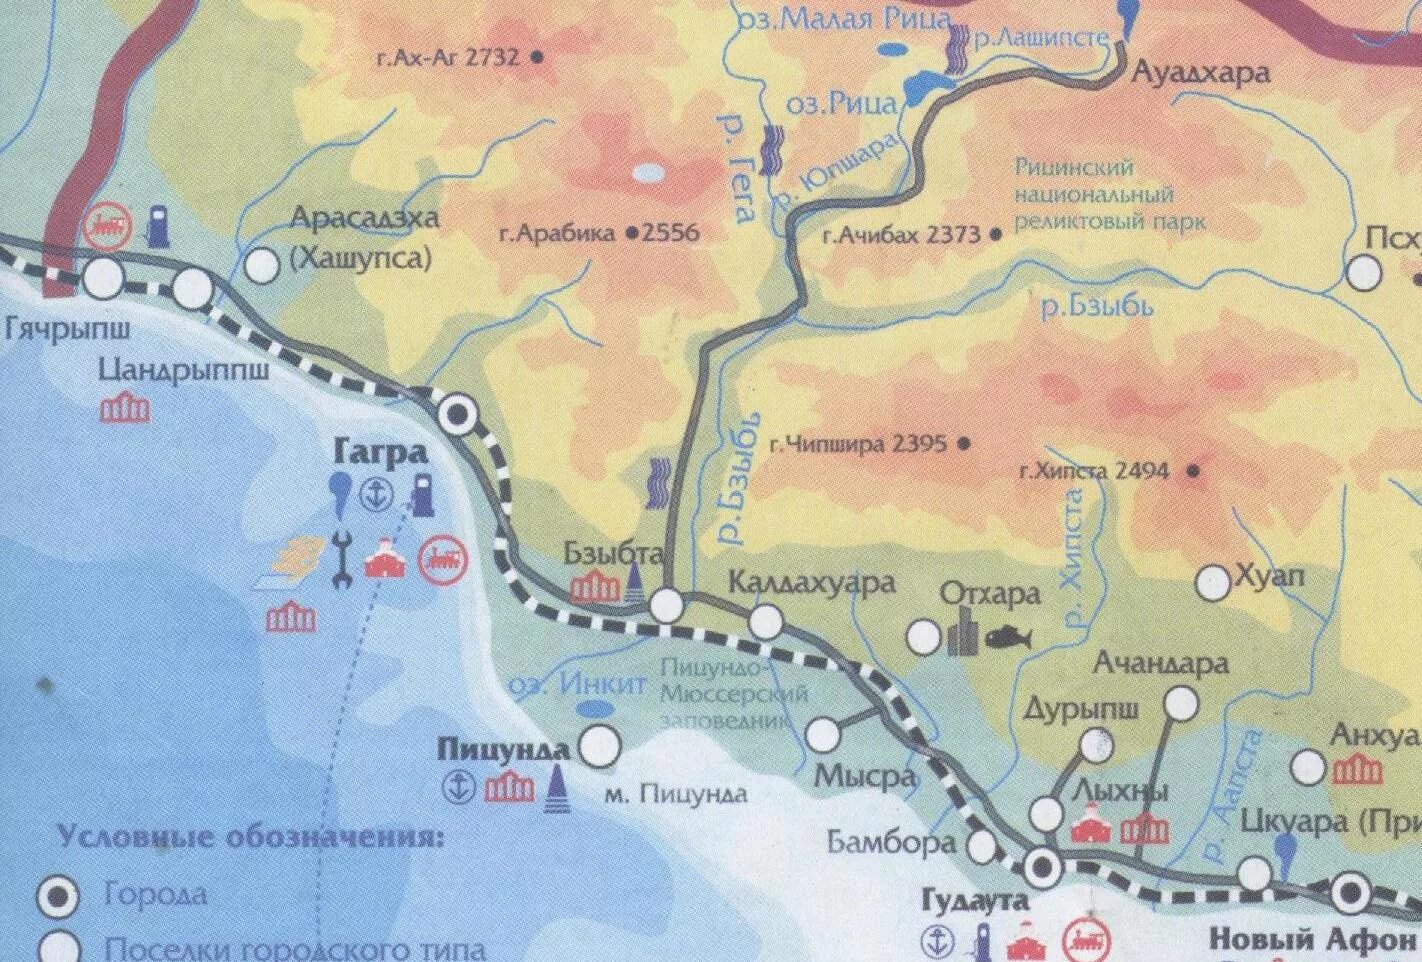 Граница новый афон. Река Бзыбь Абхазия на карте Гагры. Карта Абхазии Рица озеро карта. Оз Рица Абхазия на карте. Карта Абхазии подробная с городами и поселками озеро Рица.